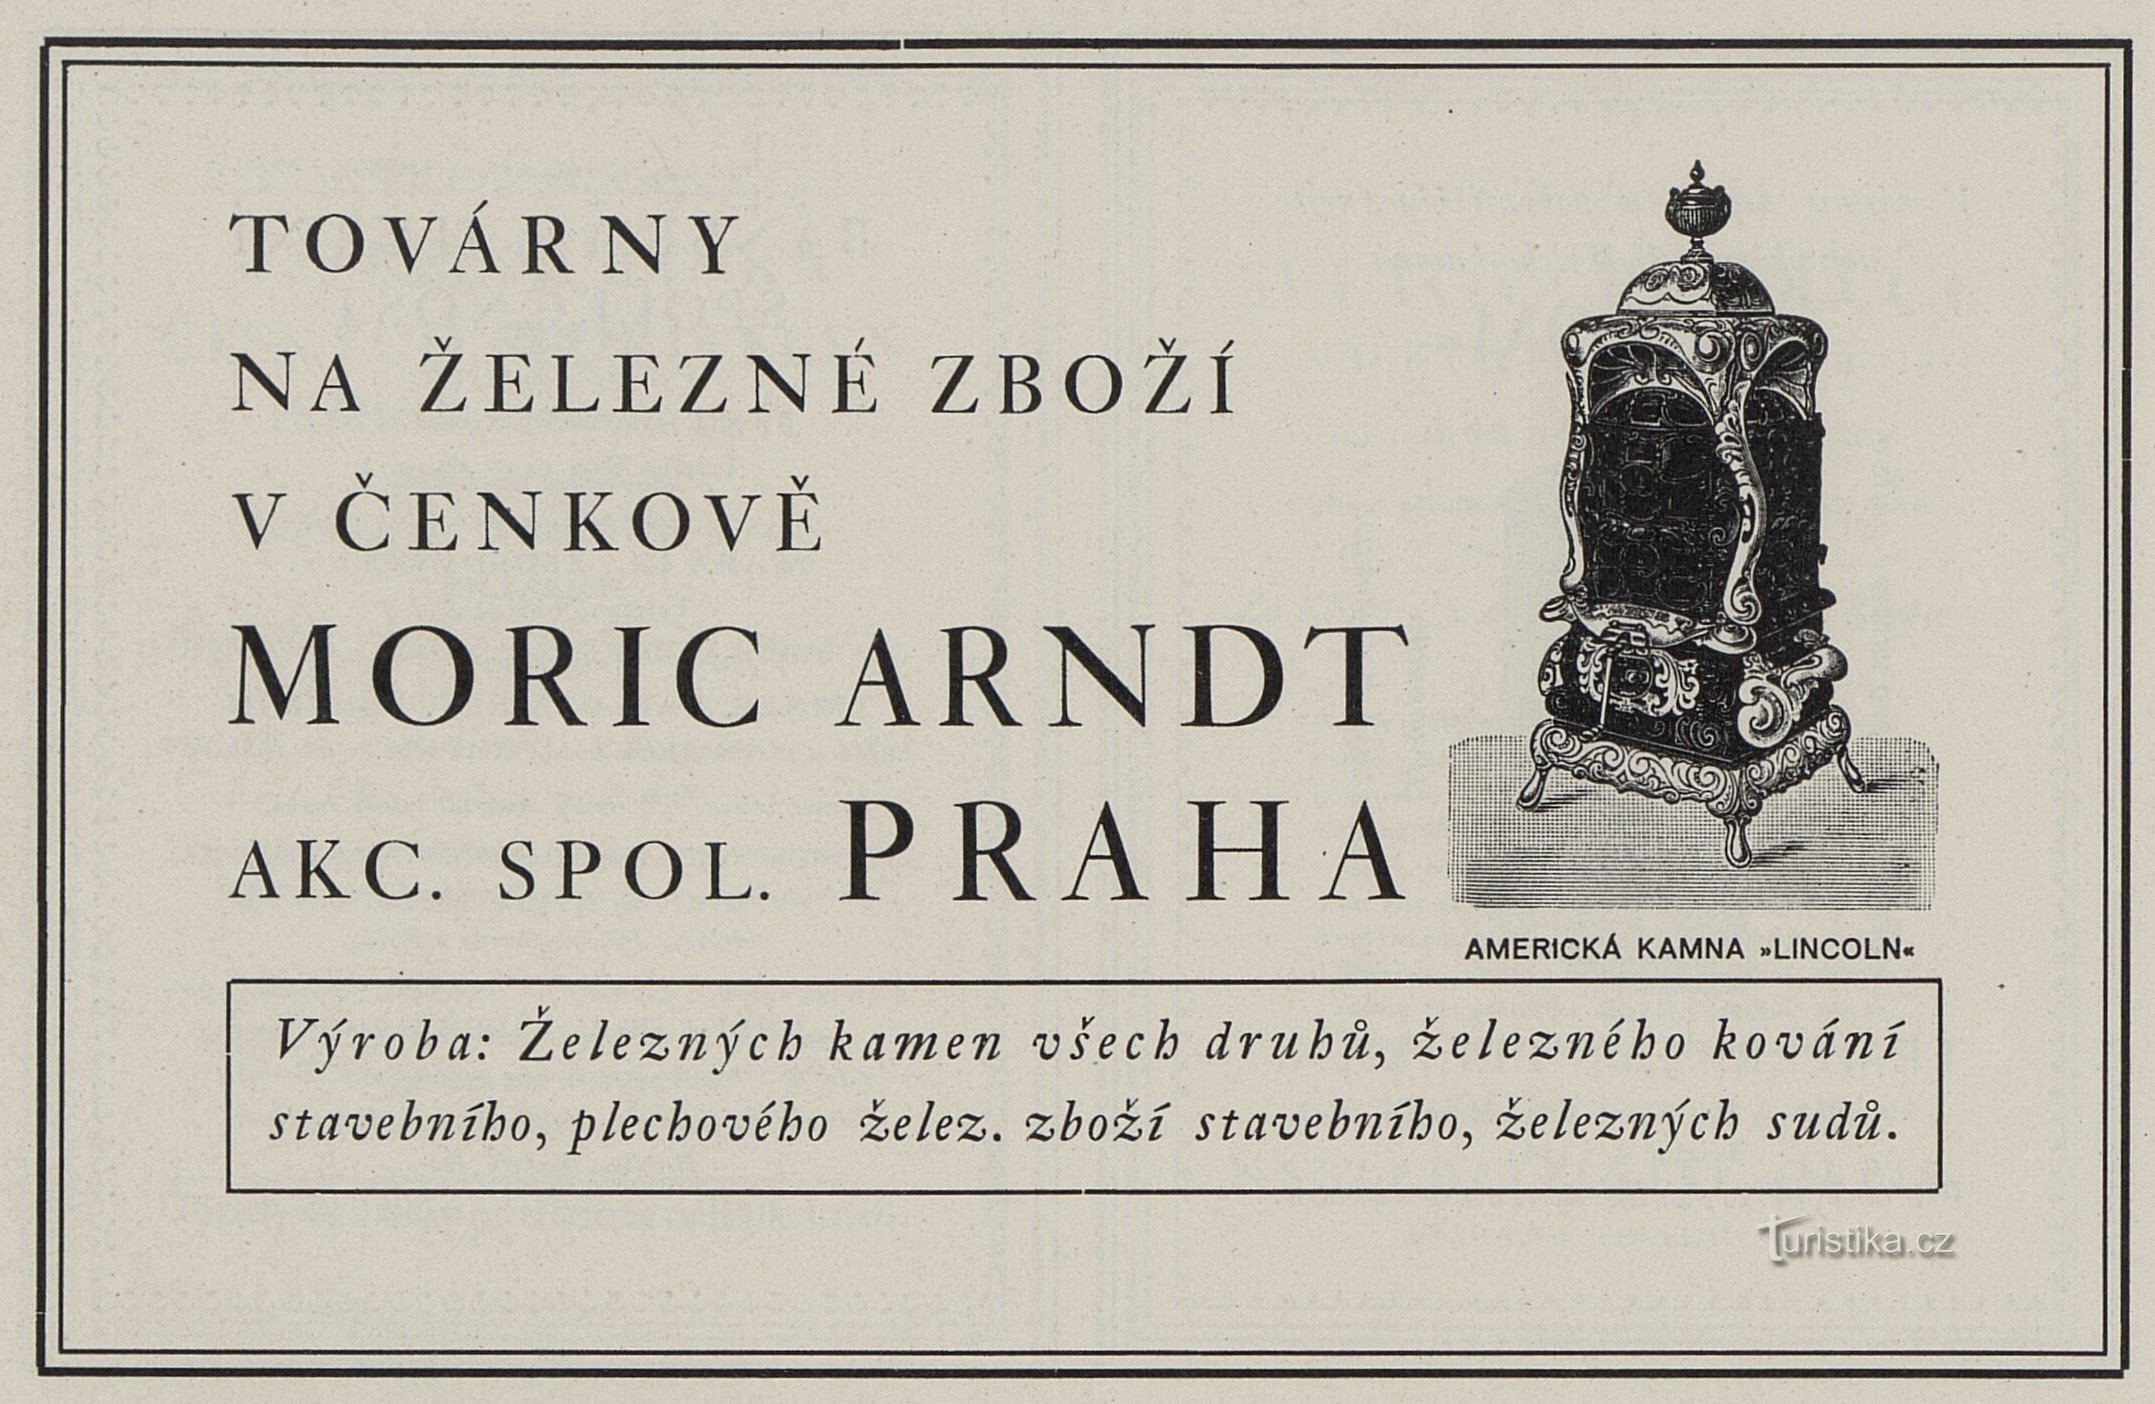 Một quảng cáo năm 1925 cho Moric Arndt